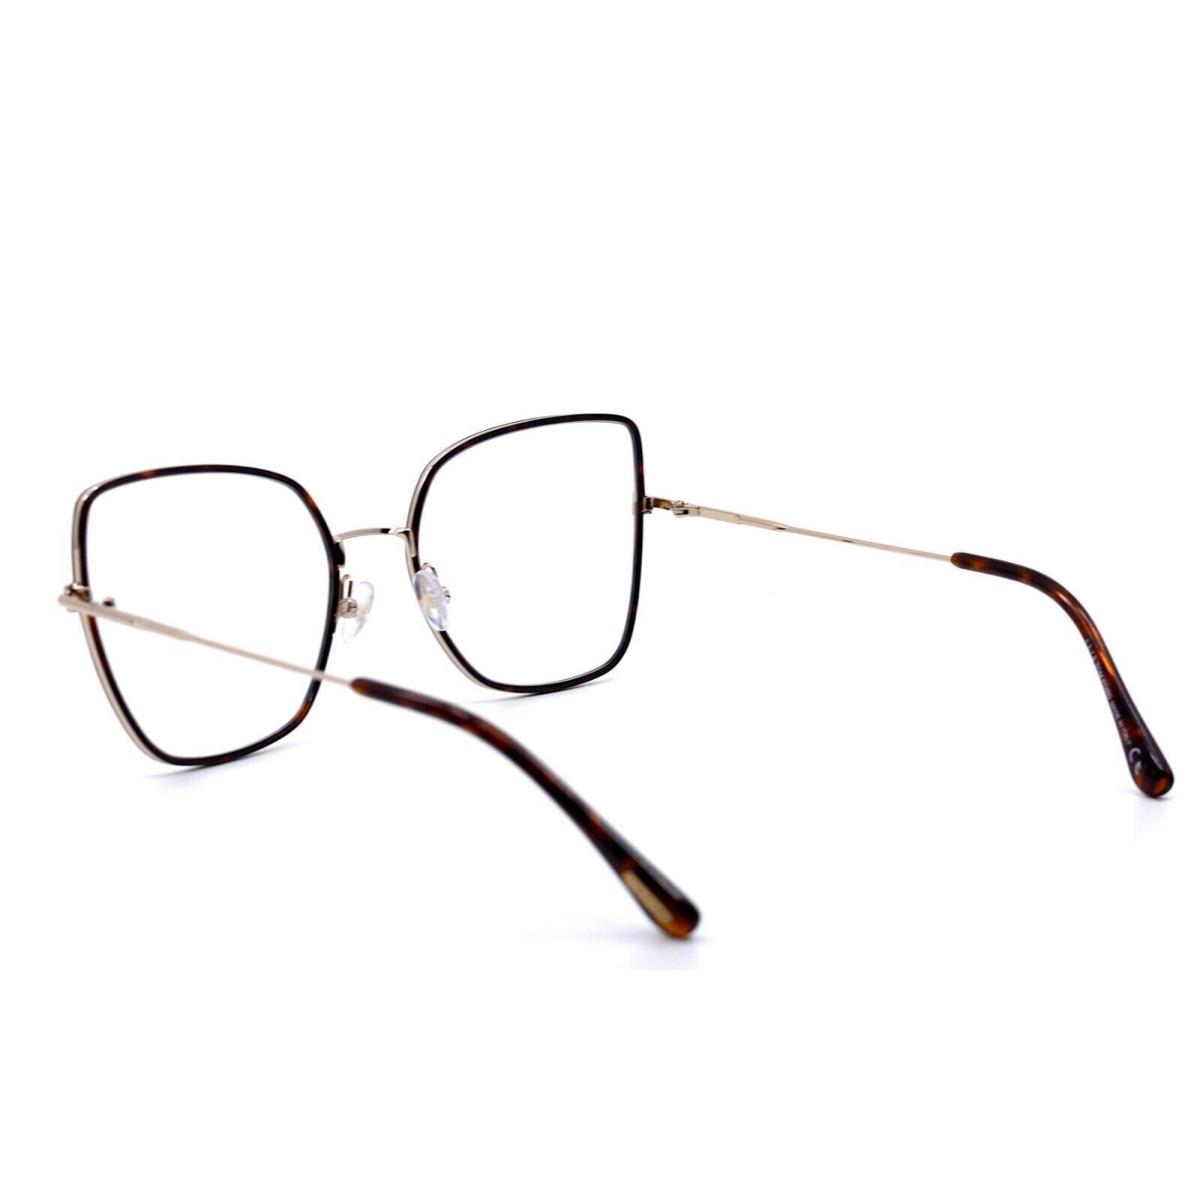 Tom Ford eyeglasses  - Havana-Gold Frame